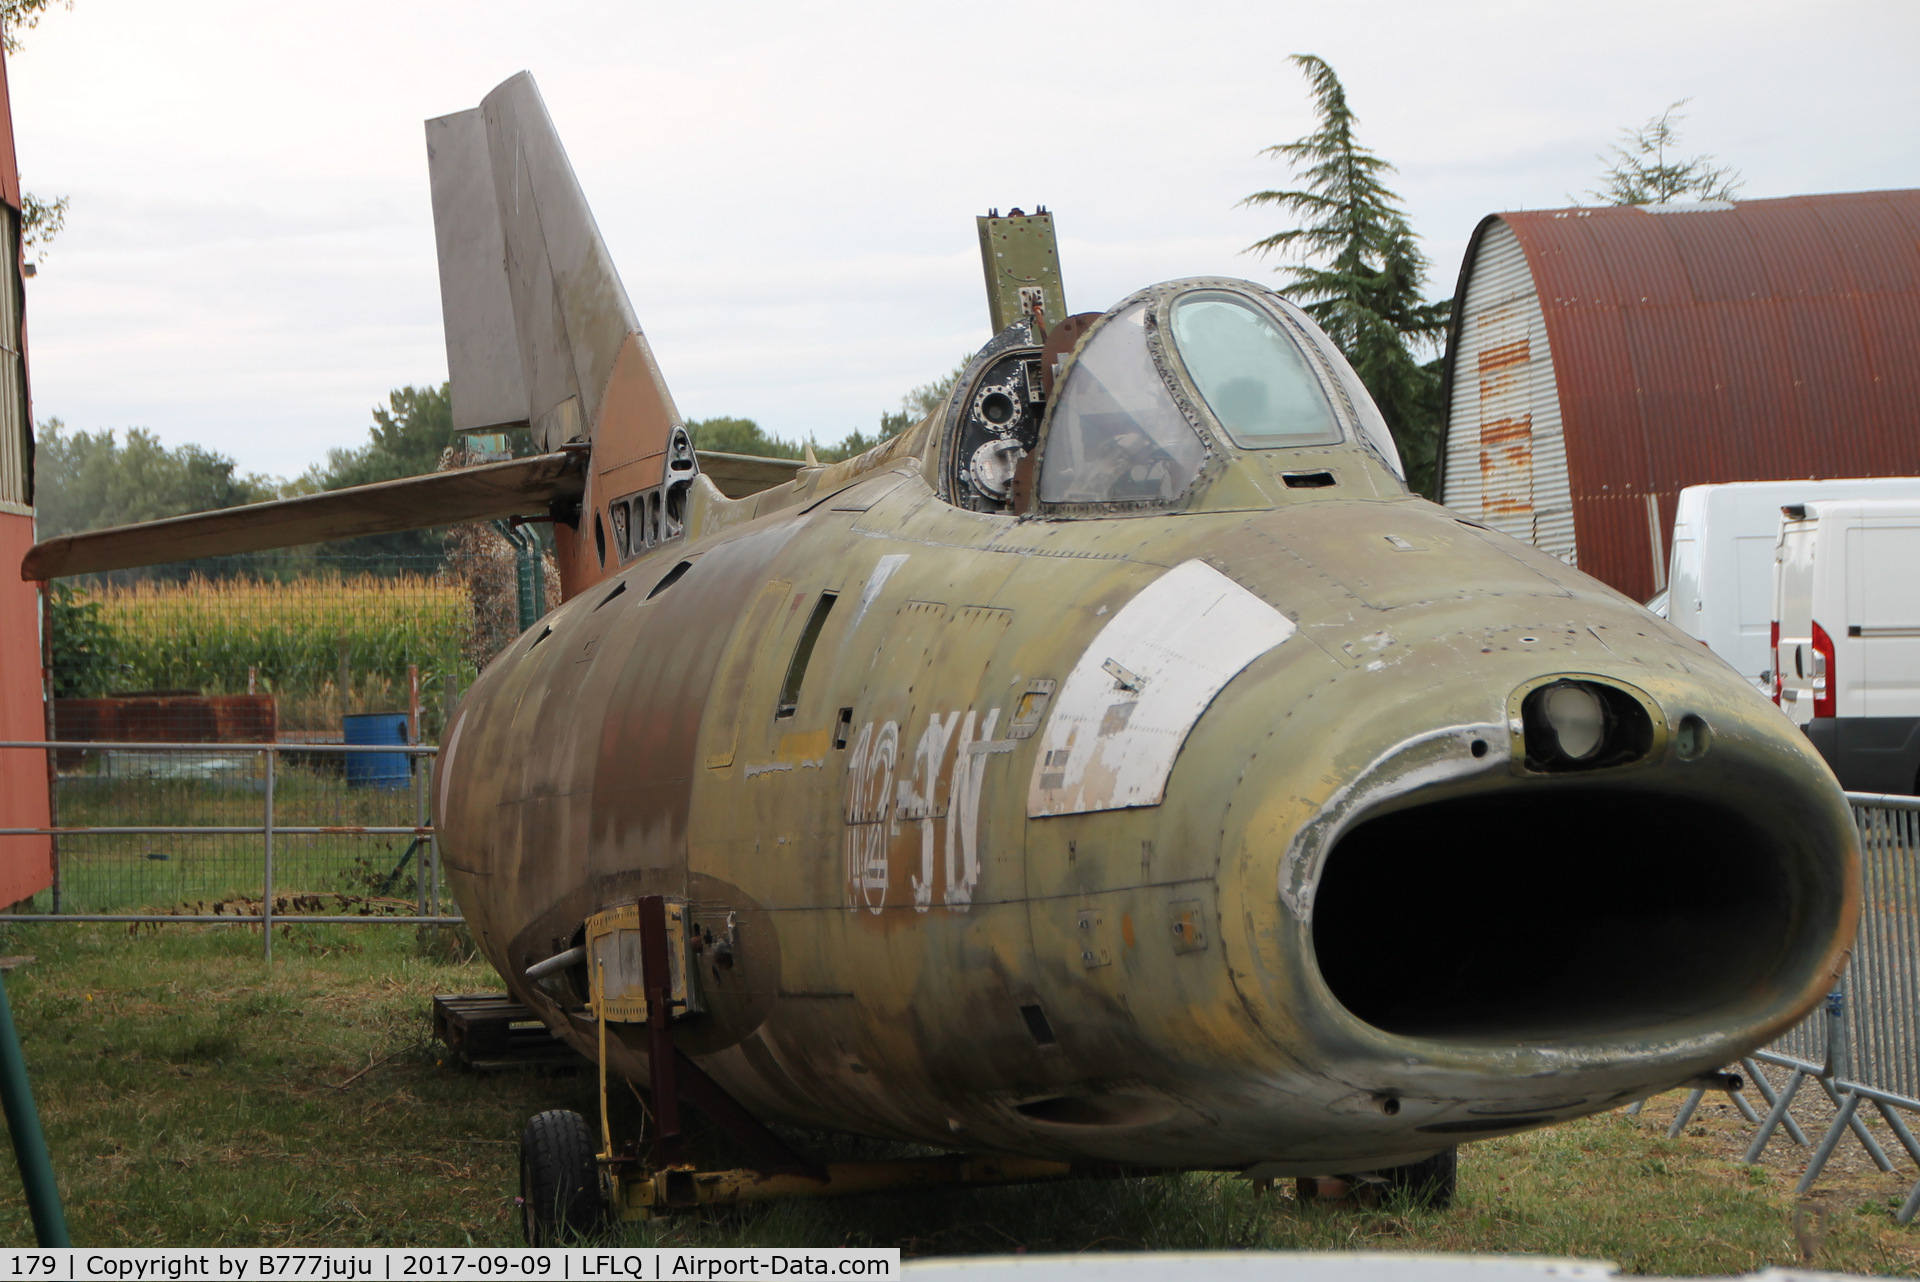 179, Dassault Super Mystere B.2 C/N 179, at Montélimar Museum for restoration and display